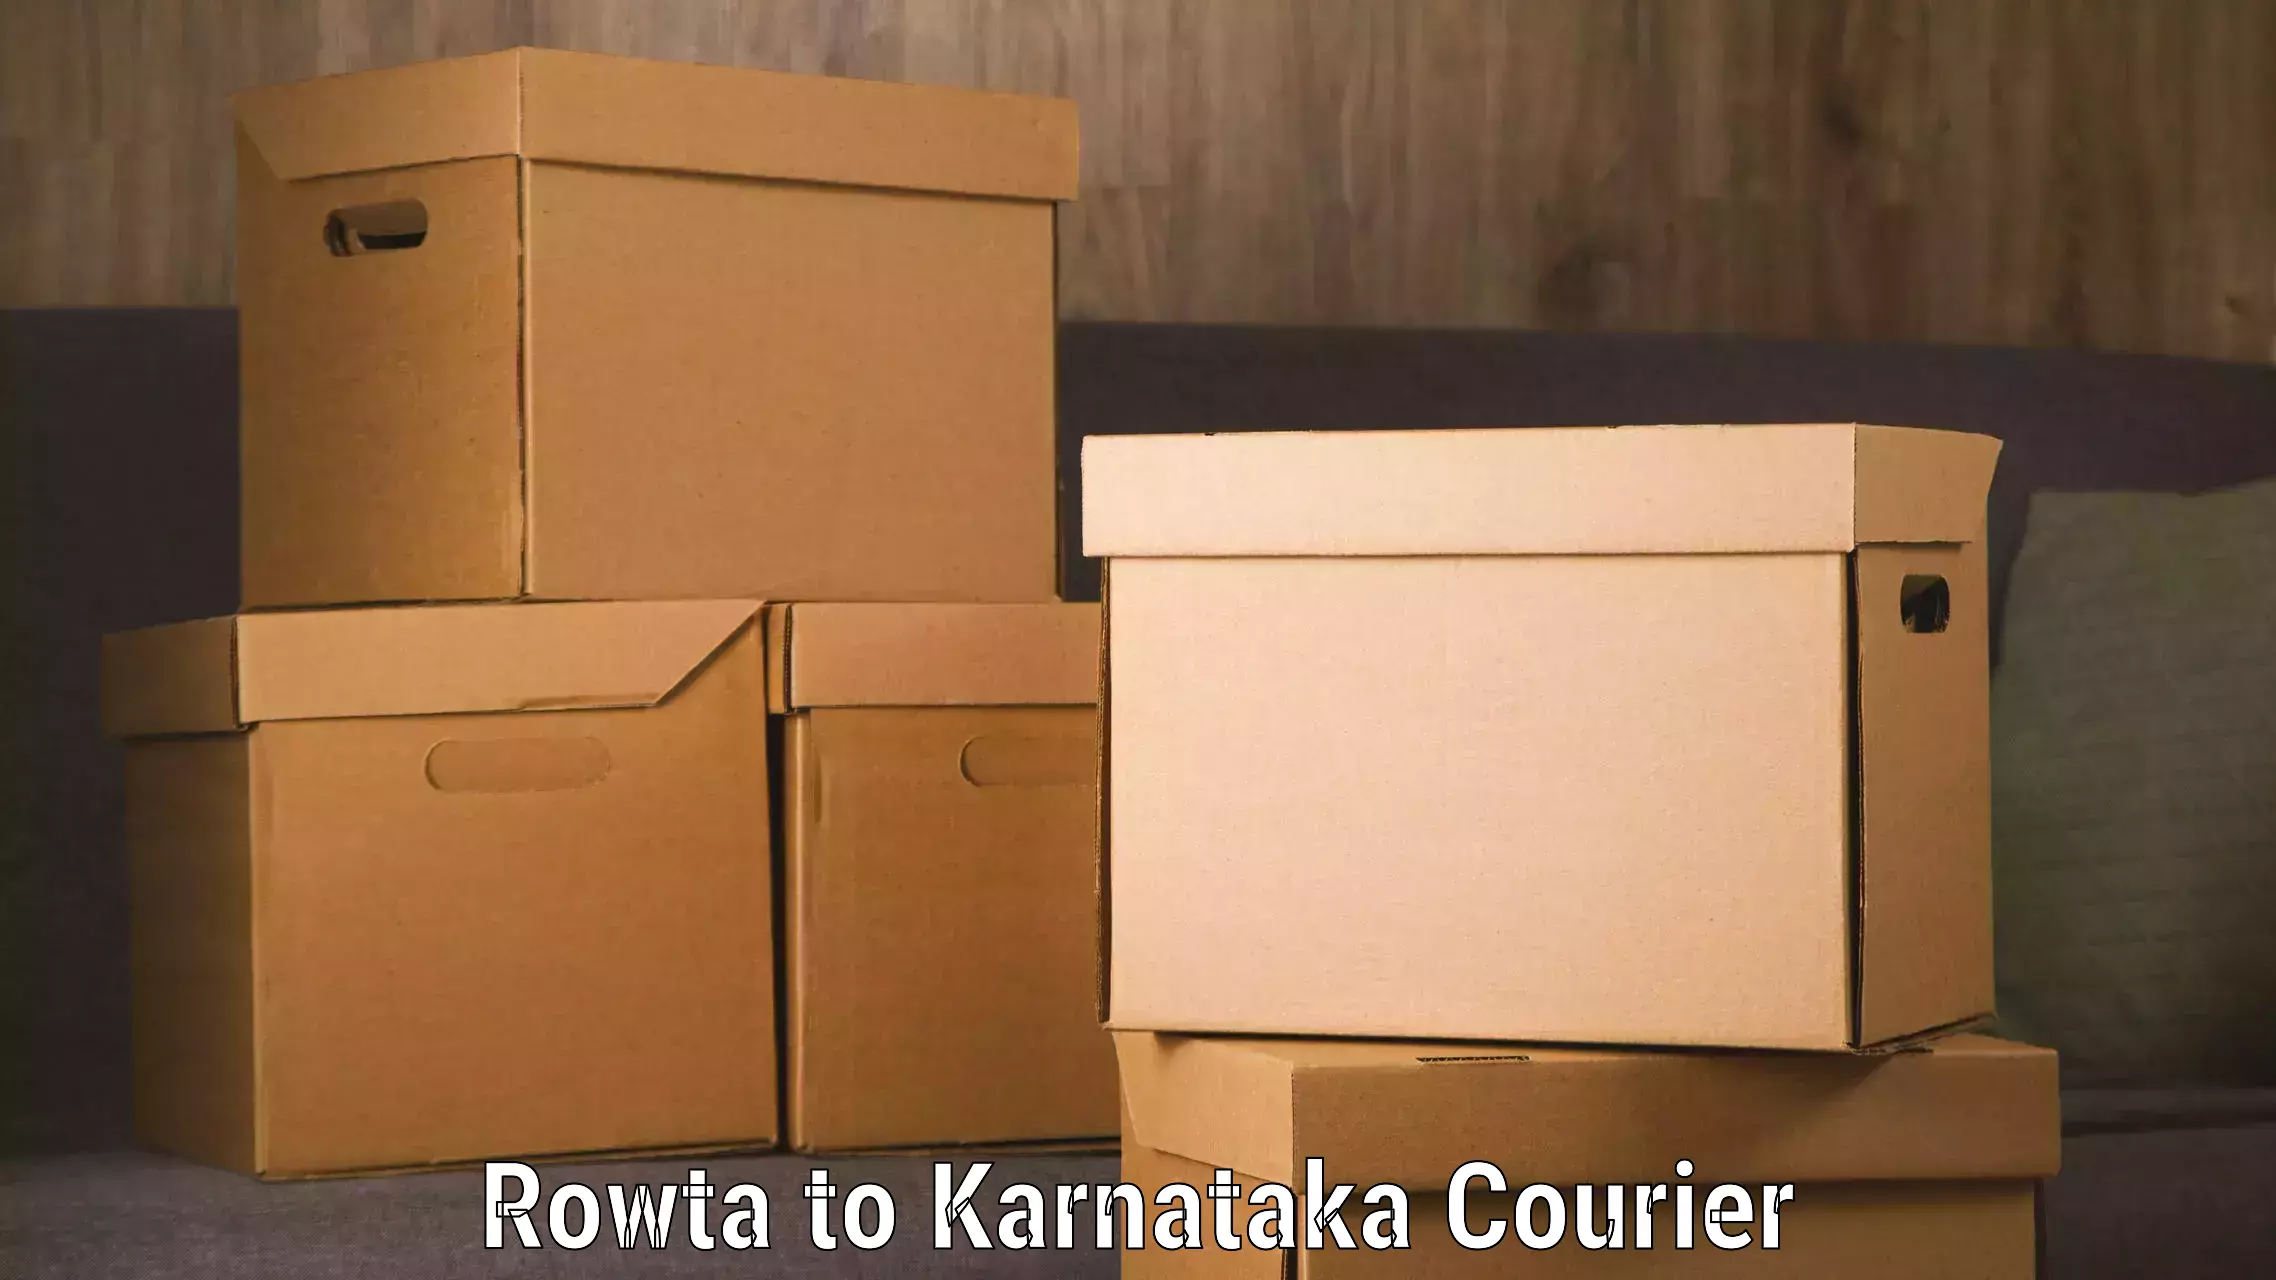 Door-to-door baggage service Rowta to Karnataka